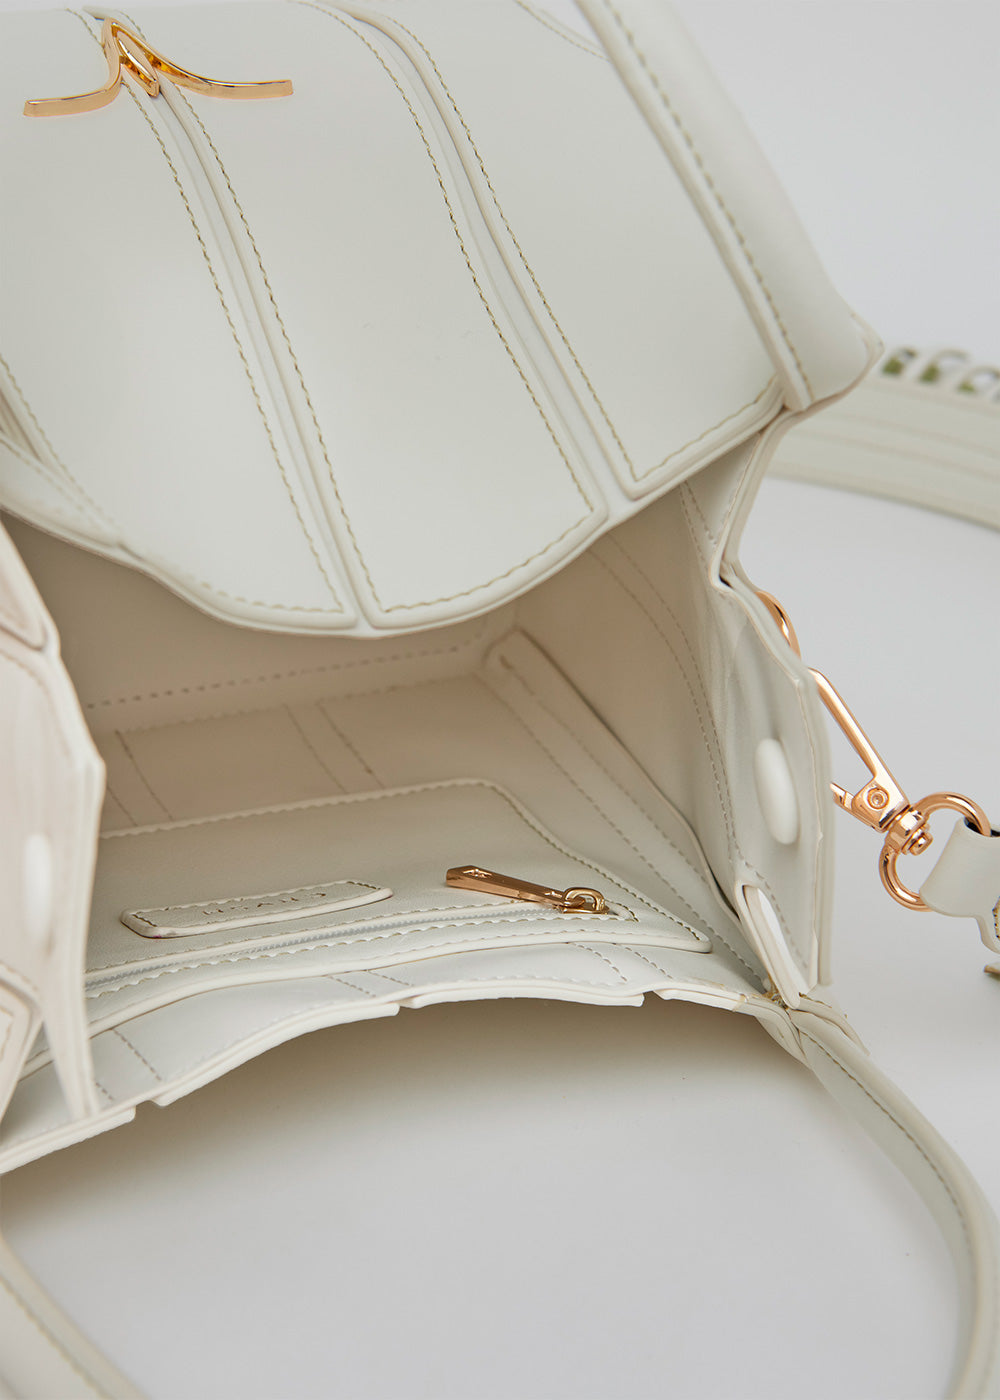 Bolso bandolera de piel vegana de máxima calidad modelo ELISA off white. Asa bandolera con flecos estilo folk, cortes y pespuntes en contraste